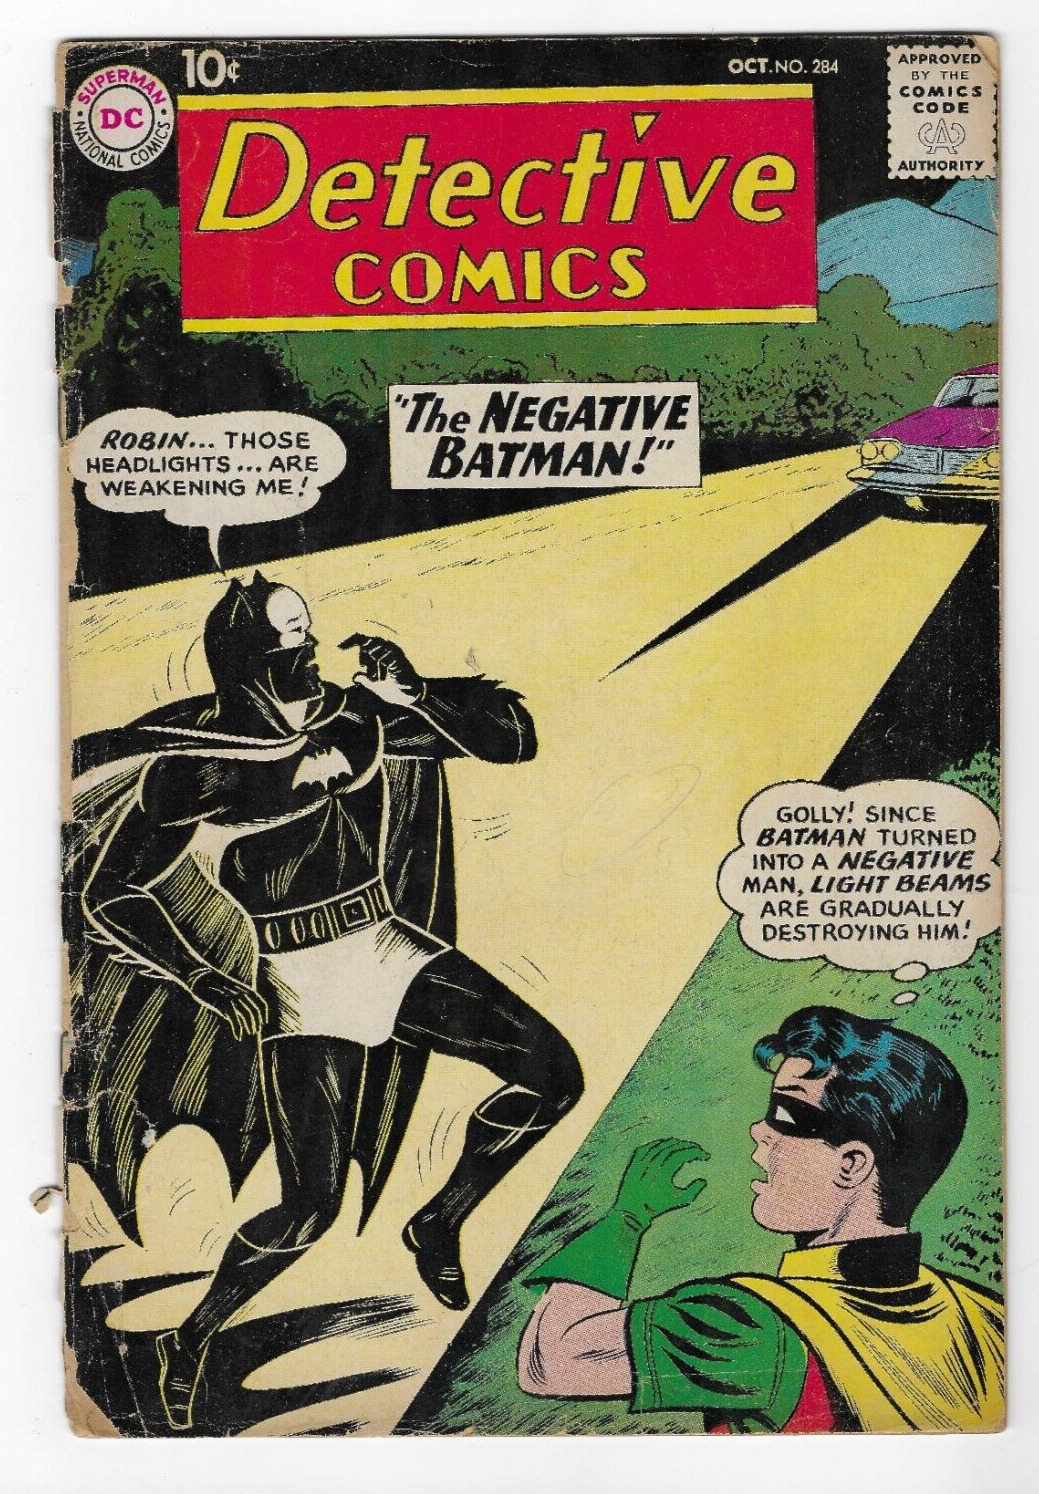 Detective Comics #284 3.0 (DC Comics 1960) - Negative Batman / Martian Manhunter